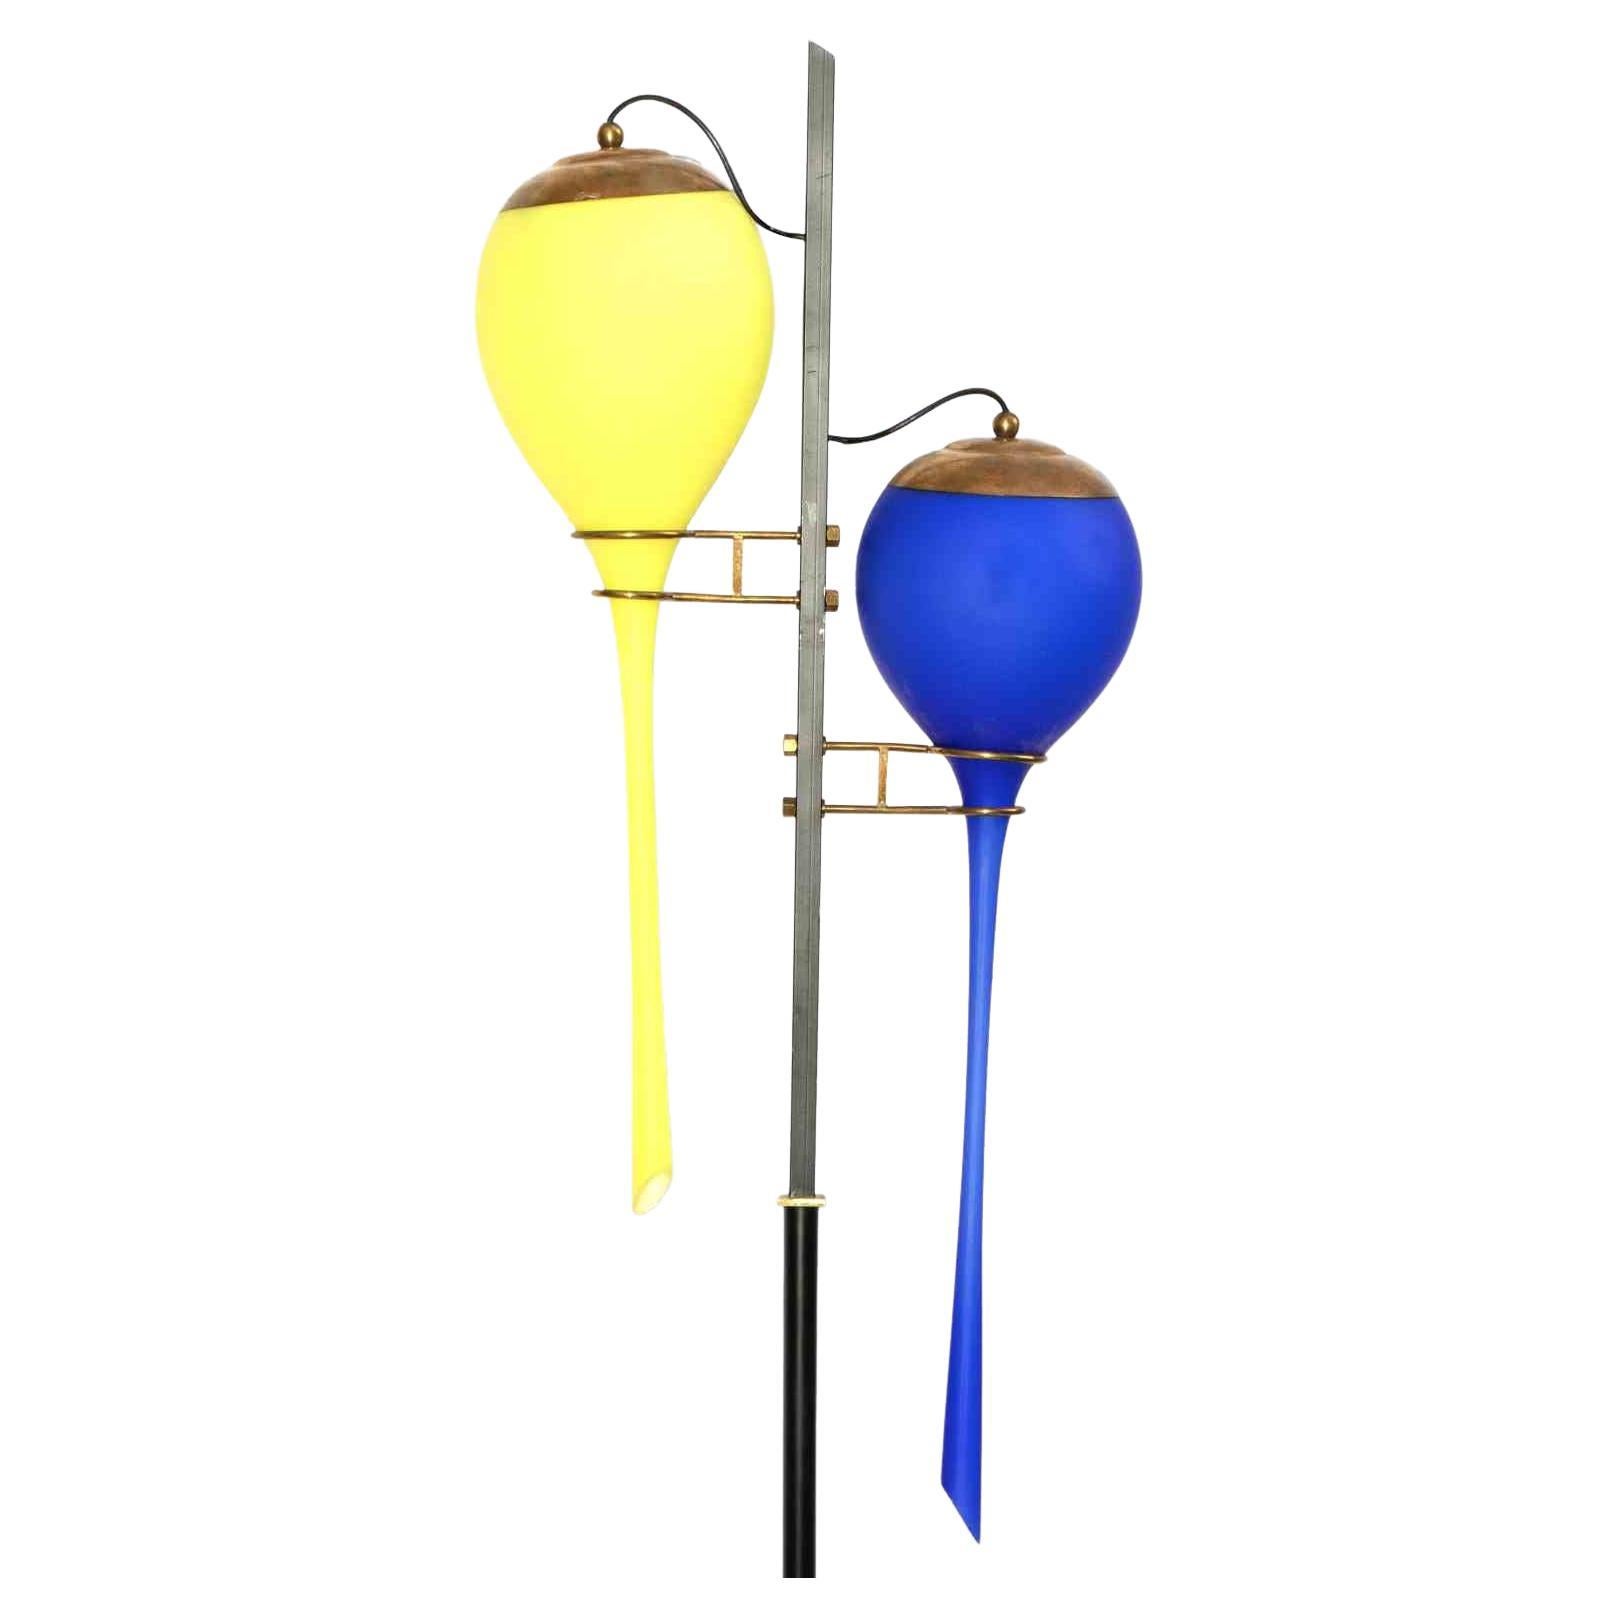 Die gelbe und blaue Stilnovo-Lampe ist ein Designobjekt, das in der Mitte des 20. Jahrhunderts für Stilnovo realisiert wurde.

Marmorsockel, schwarz lackierter Metallstiel, blau und gelb gefärbte Glasdiffusoren.

Sehr guter Zustand.

Sammeln Sie